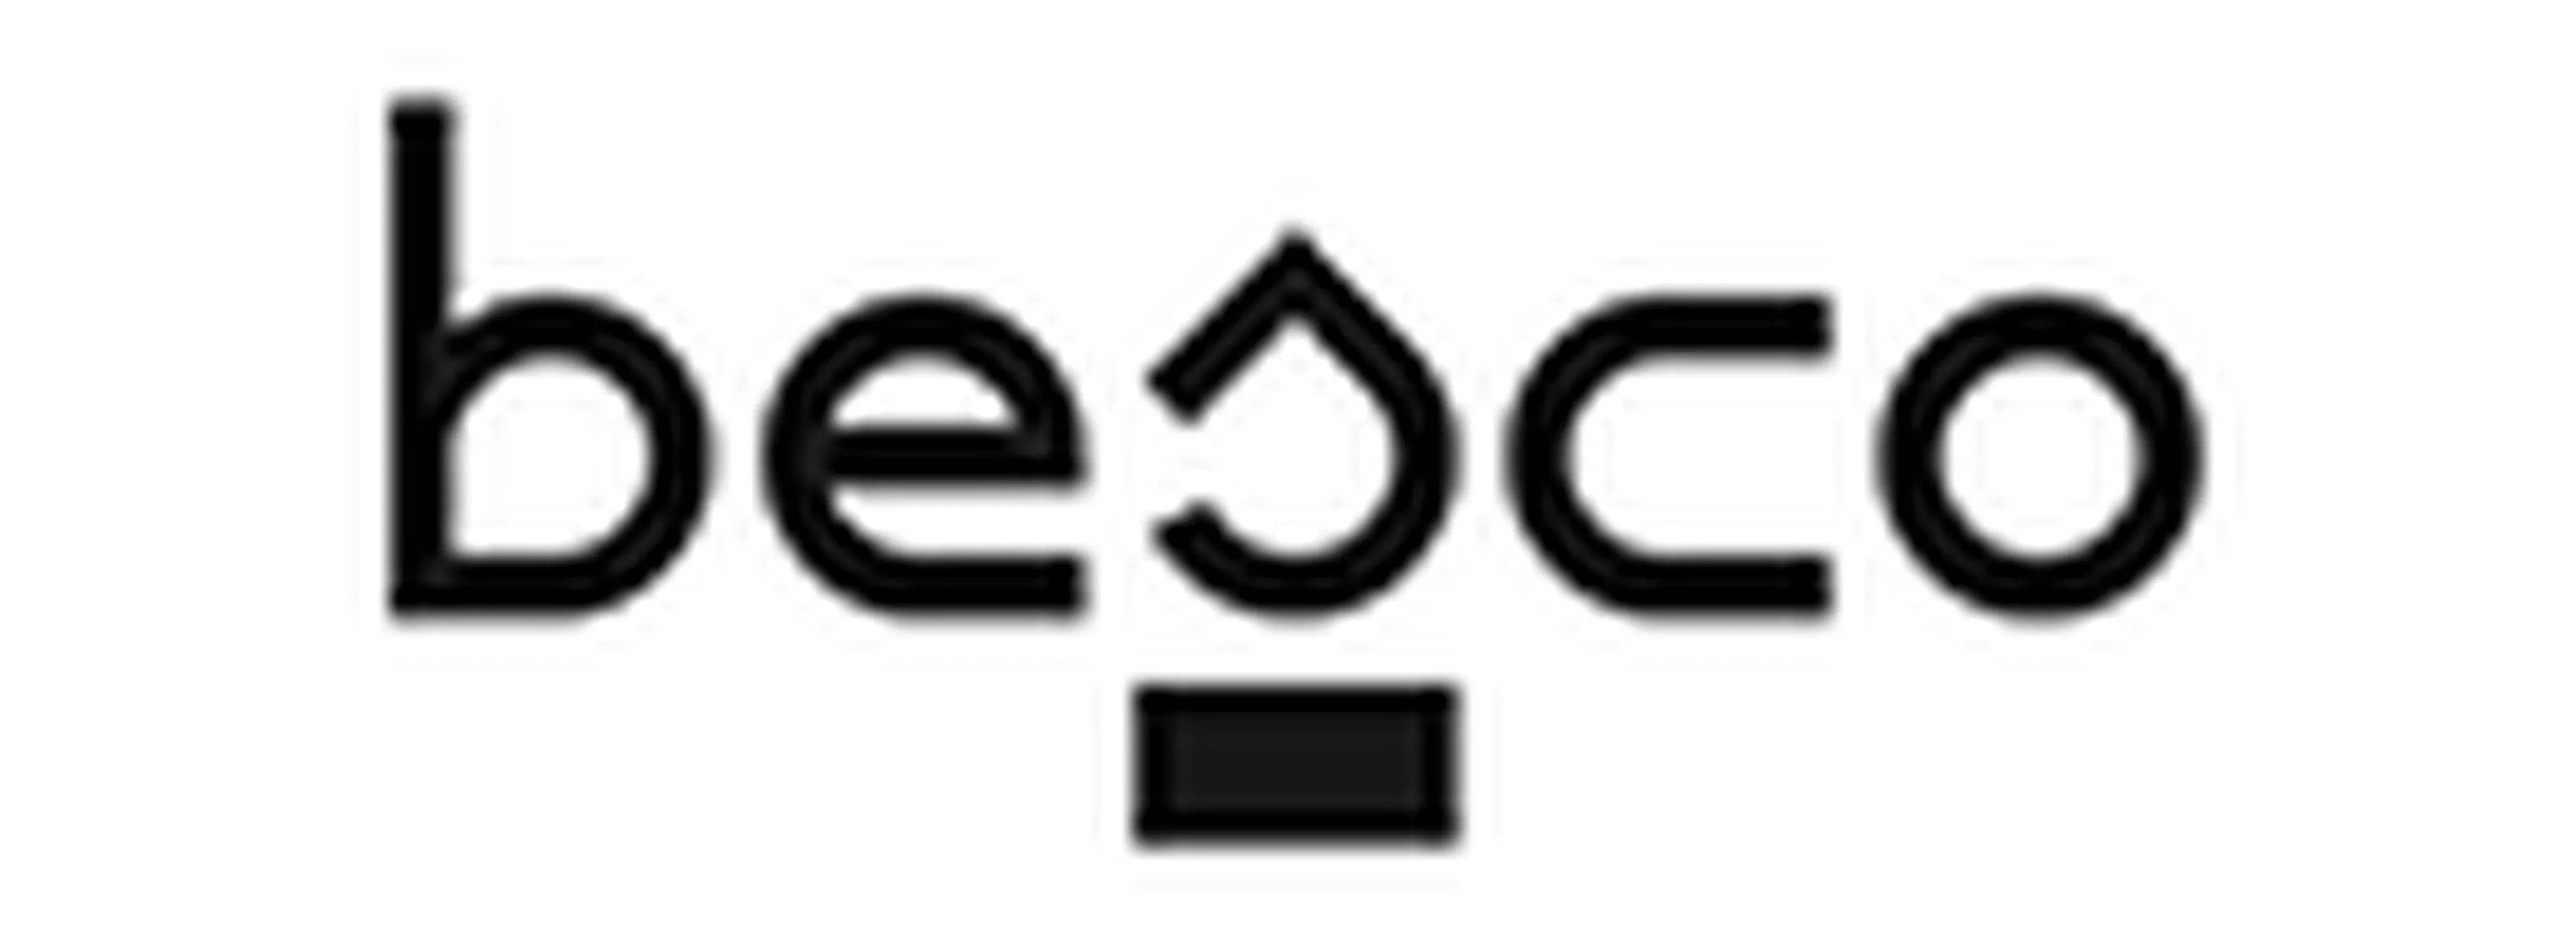 Besco logo